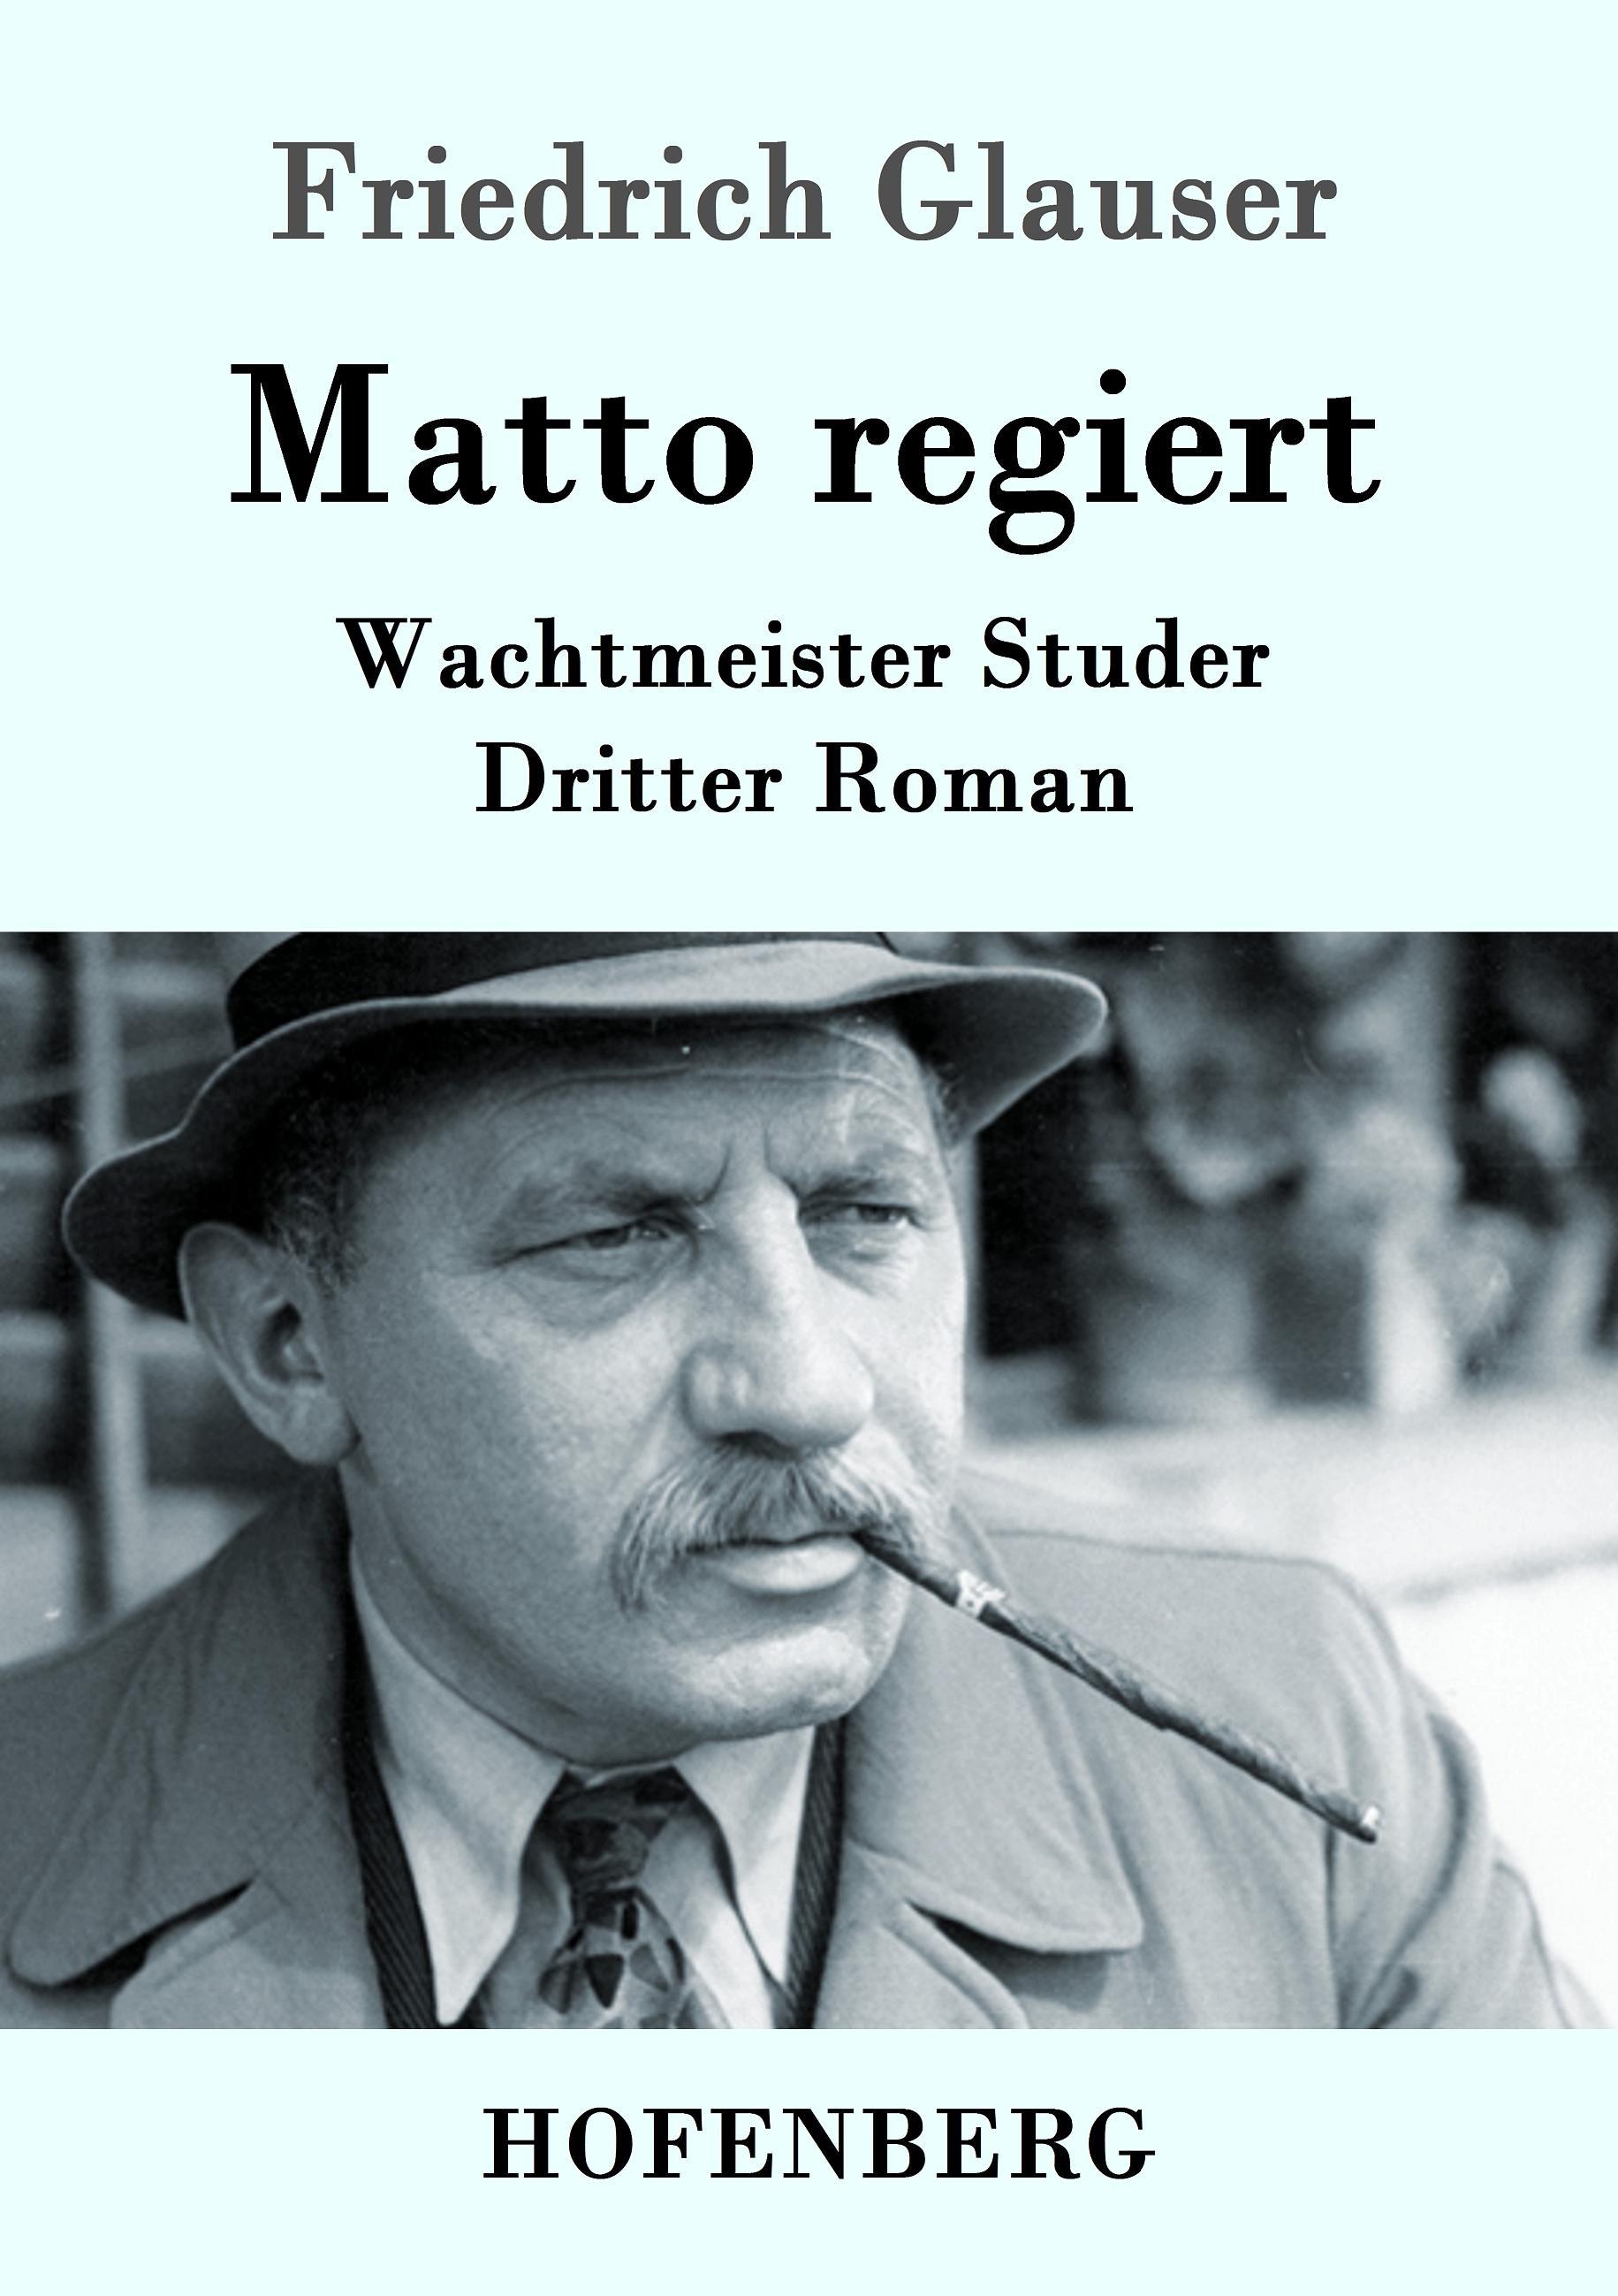 Matto regiert - Glauser, Friedrich